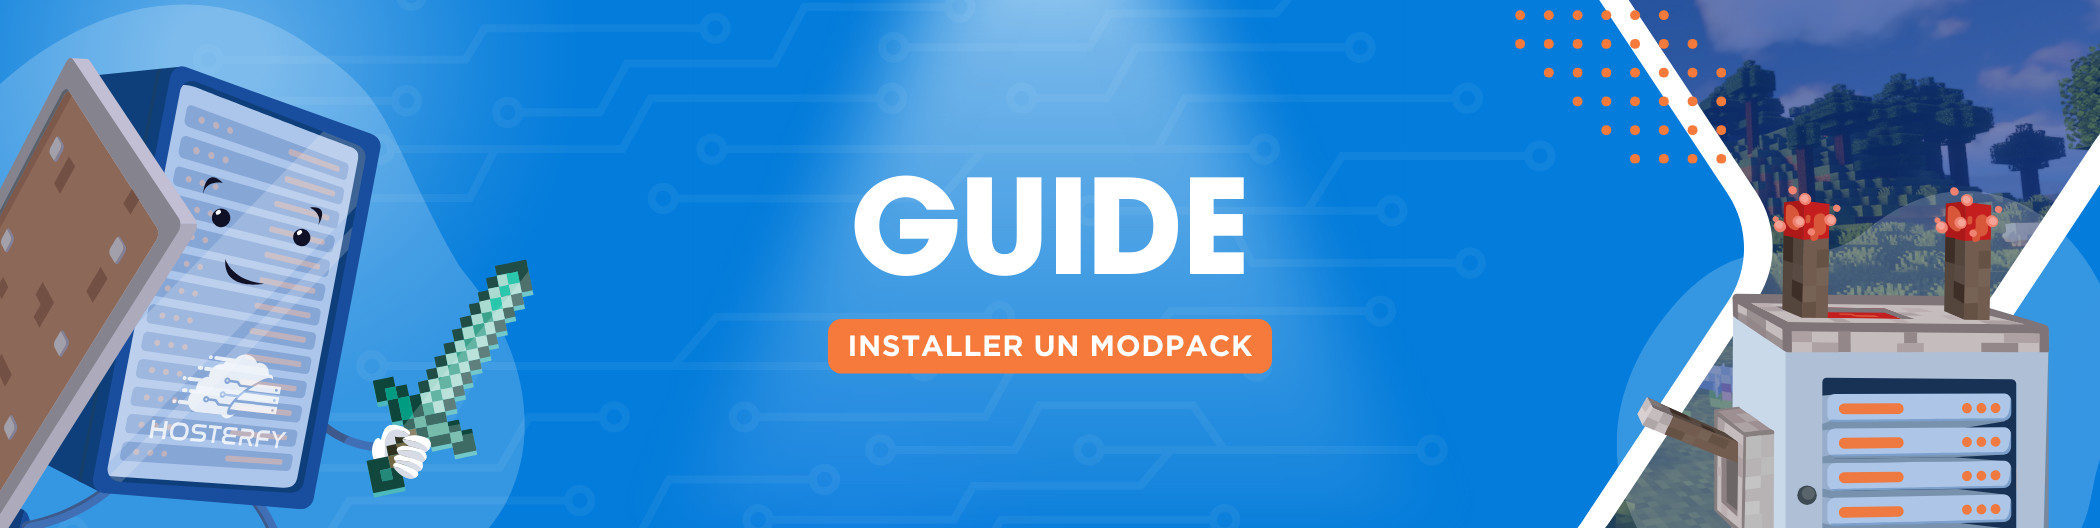 [Minecraft] ¿Cómo instalo un modpack con el instalador rápido?